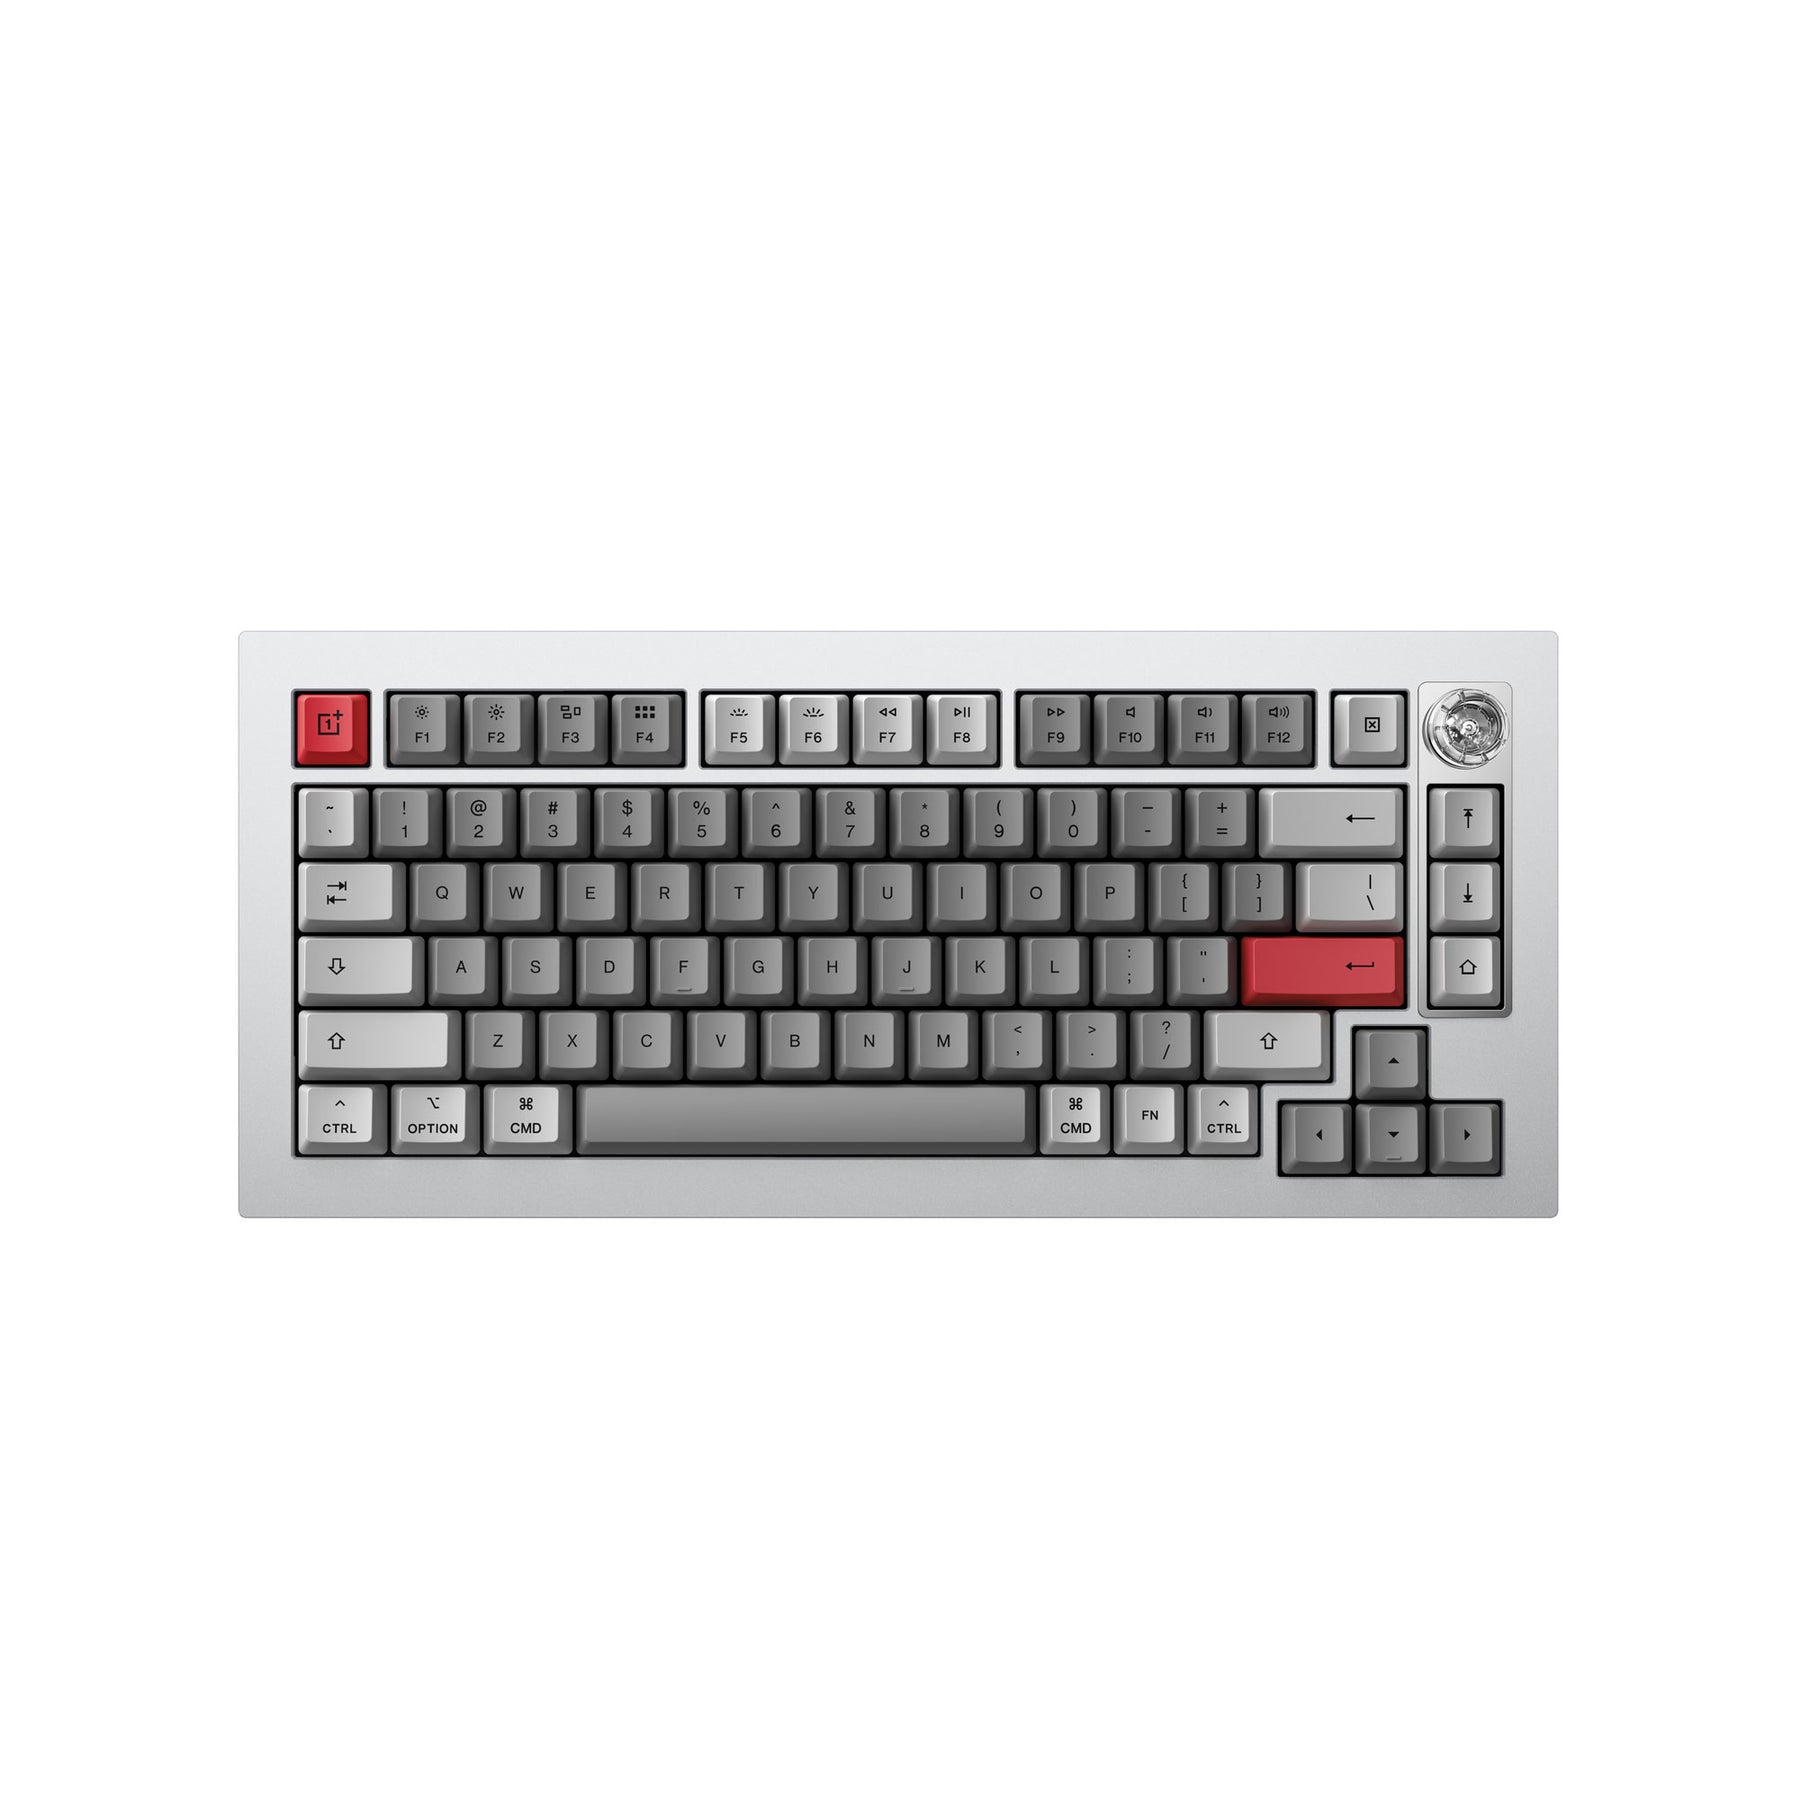 Keyboard 81 Pro By Keychron / One Plusキーボード配列英語